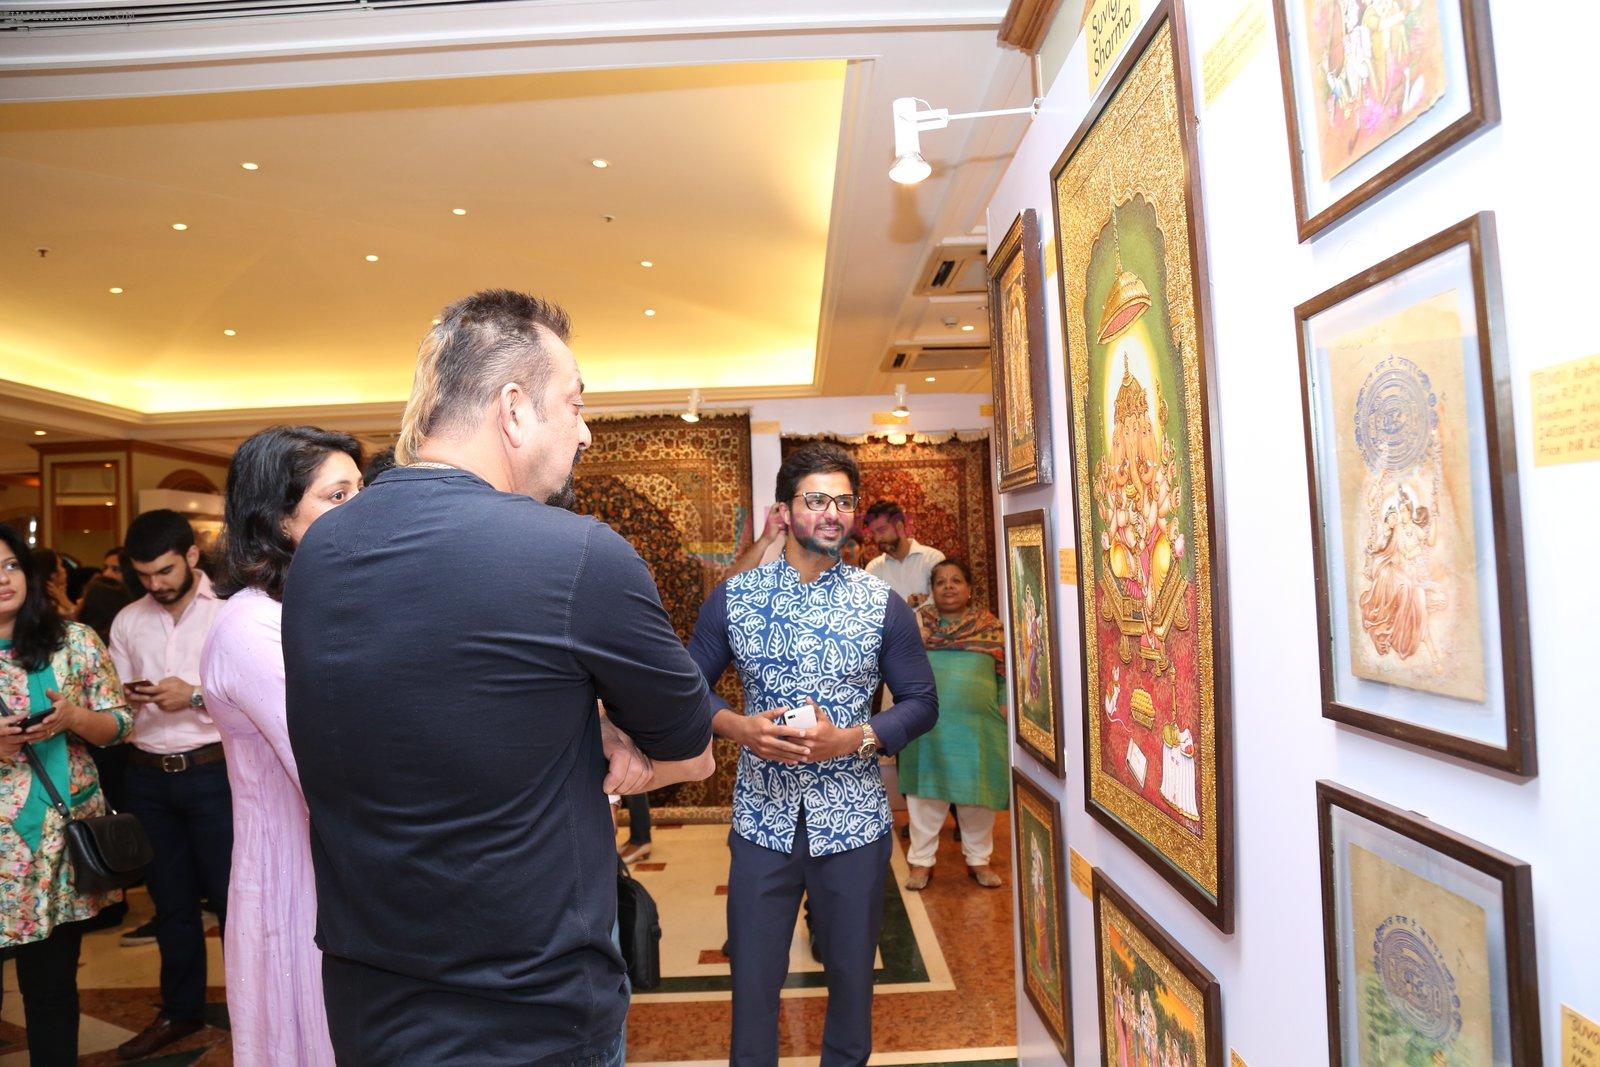 Sanjay Dutt at Nargis Dutt Foundation art event on 11th June 2016